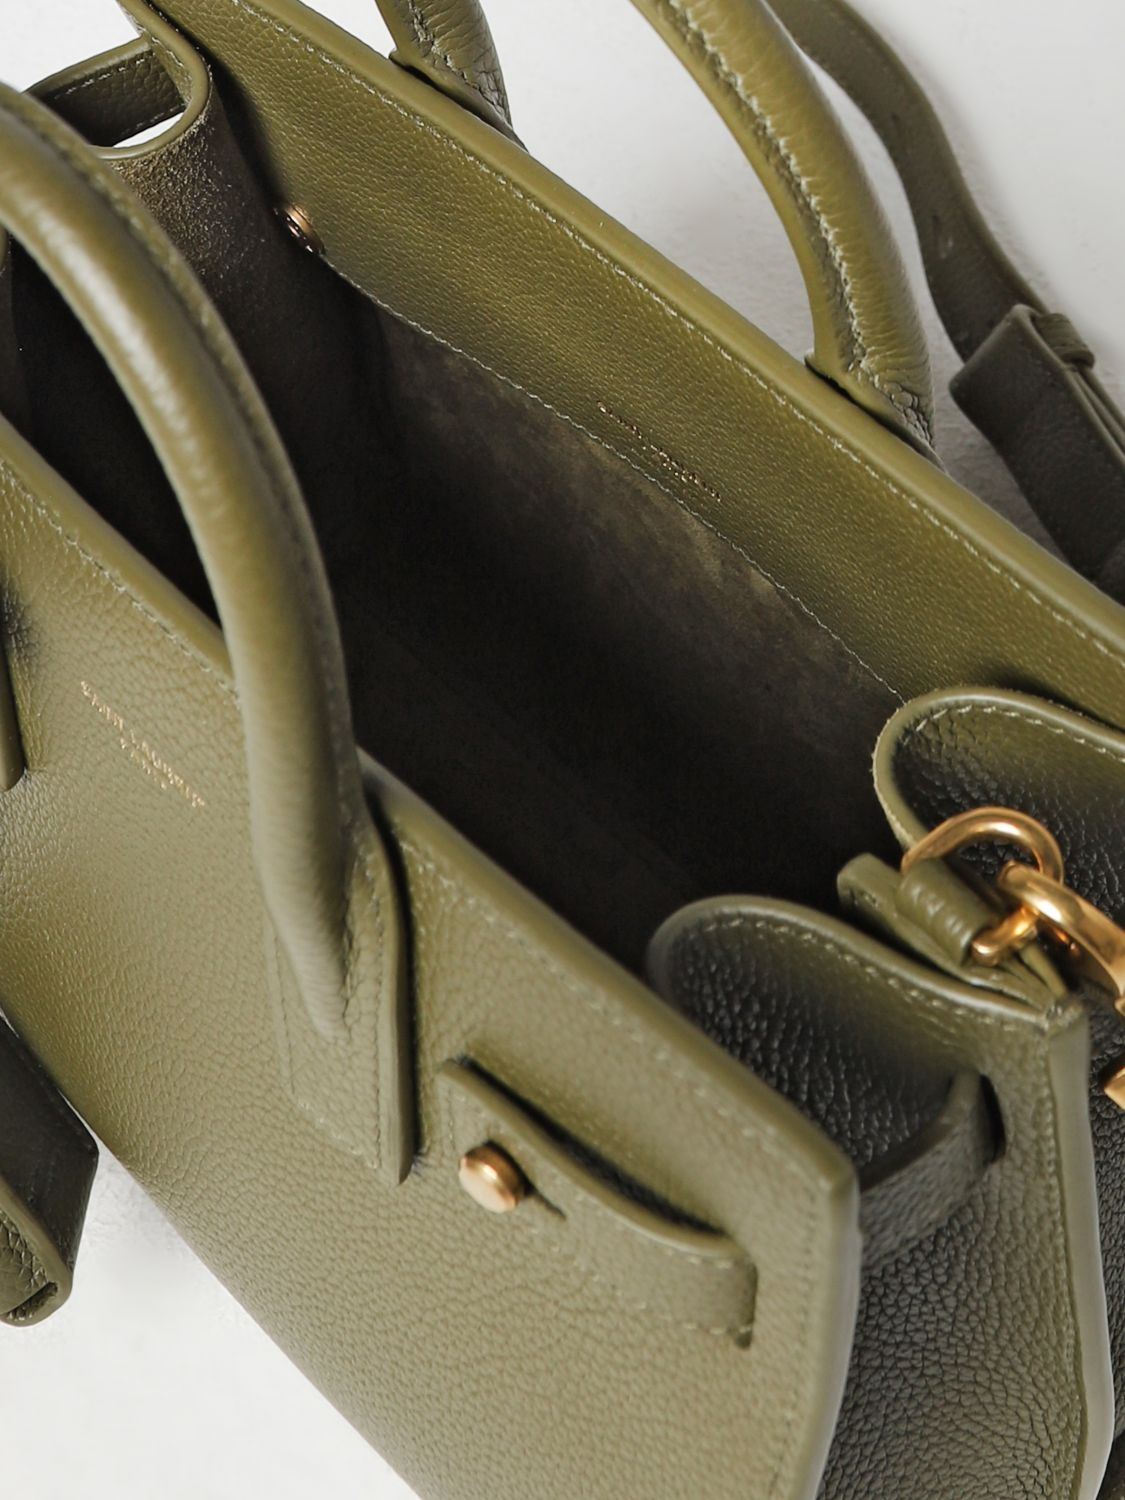 SAINT LAURENT: Sac De Jour bag in textured leather - Green